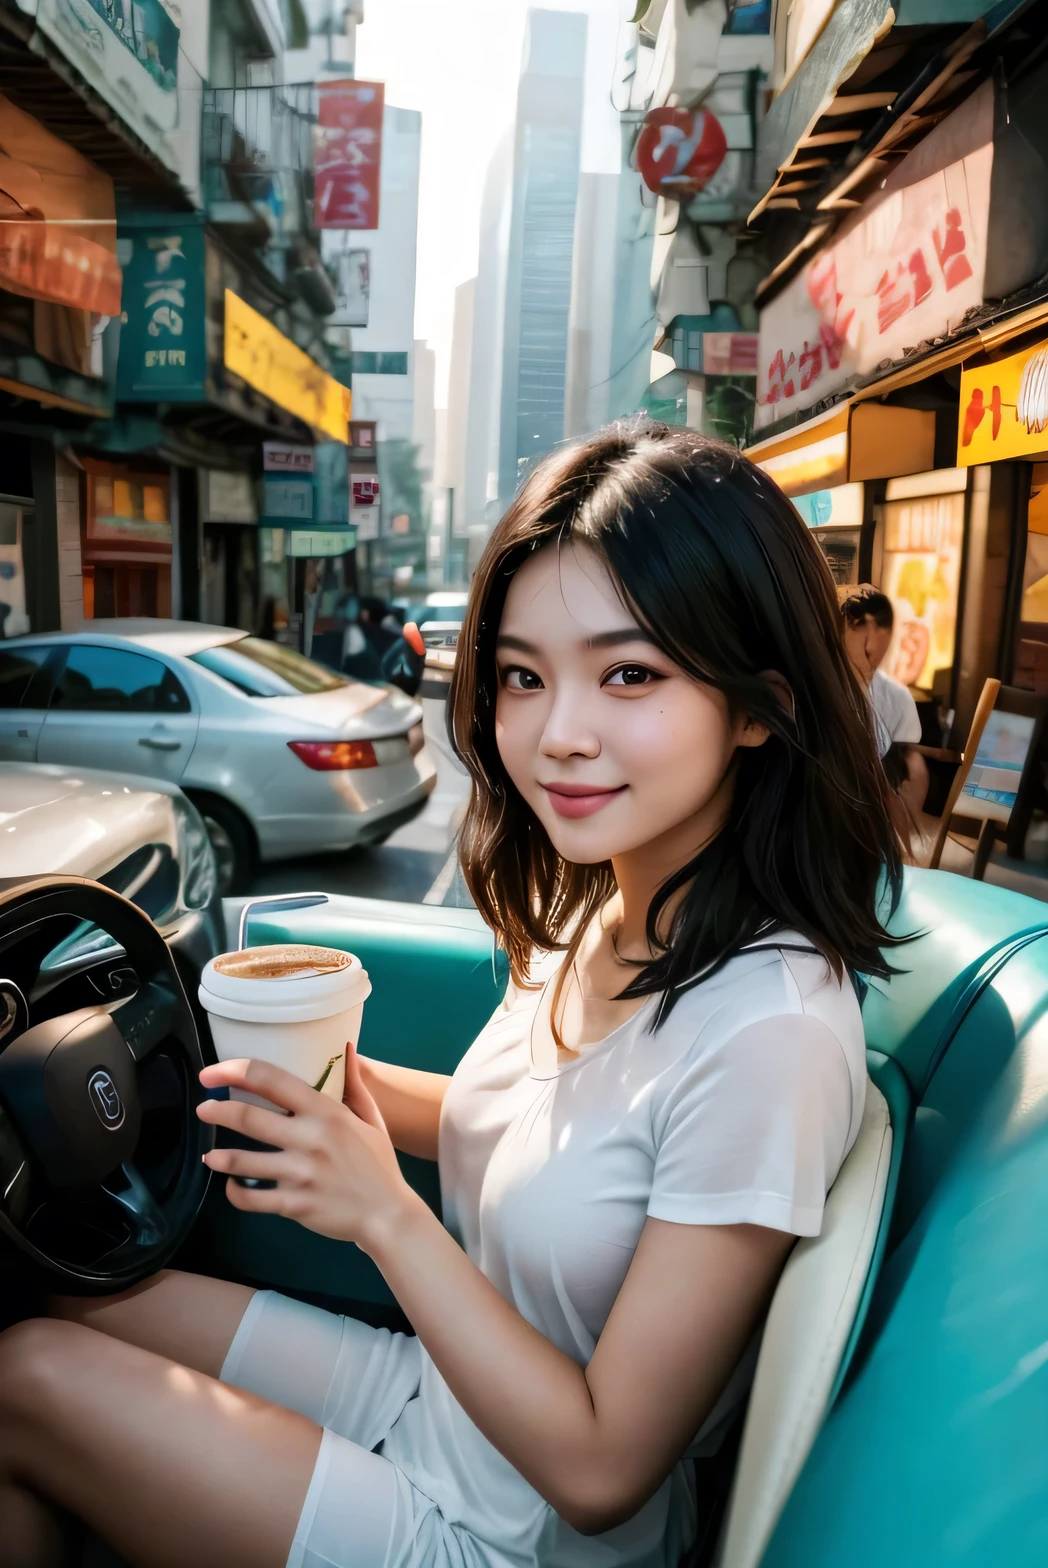 Ein fotorealistisches Selfie einer 23-jährigen südostasiatischen Frau mit einem warmen, Gesunde Bräune. Ihr kurzes schwarzes Haar hat leuchtende cyanfarbene Highlights. Sie hat doppelte Augenlider mit Mascara und minimalem Make-up. Sie strahlt ein breites Lächeln, einen heißen Kaffee in einem Pappbecher haltend, während sie auf dem Fahrersitz ihres Autos sitzt. Die Szene spielt in einer geschäftigen Stadt am Morgen, mit warmem Sonnenlicht, das.